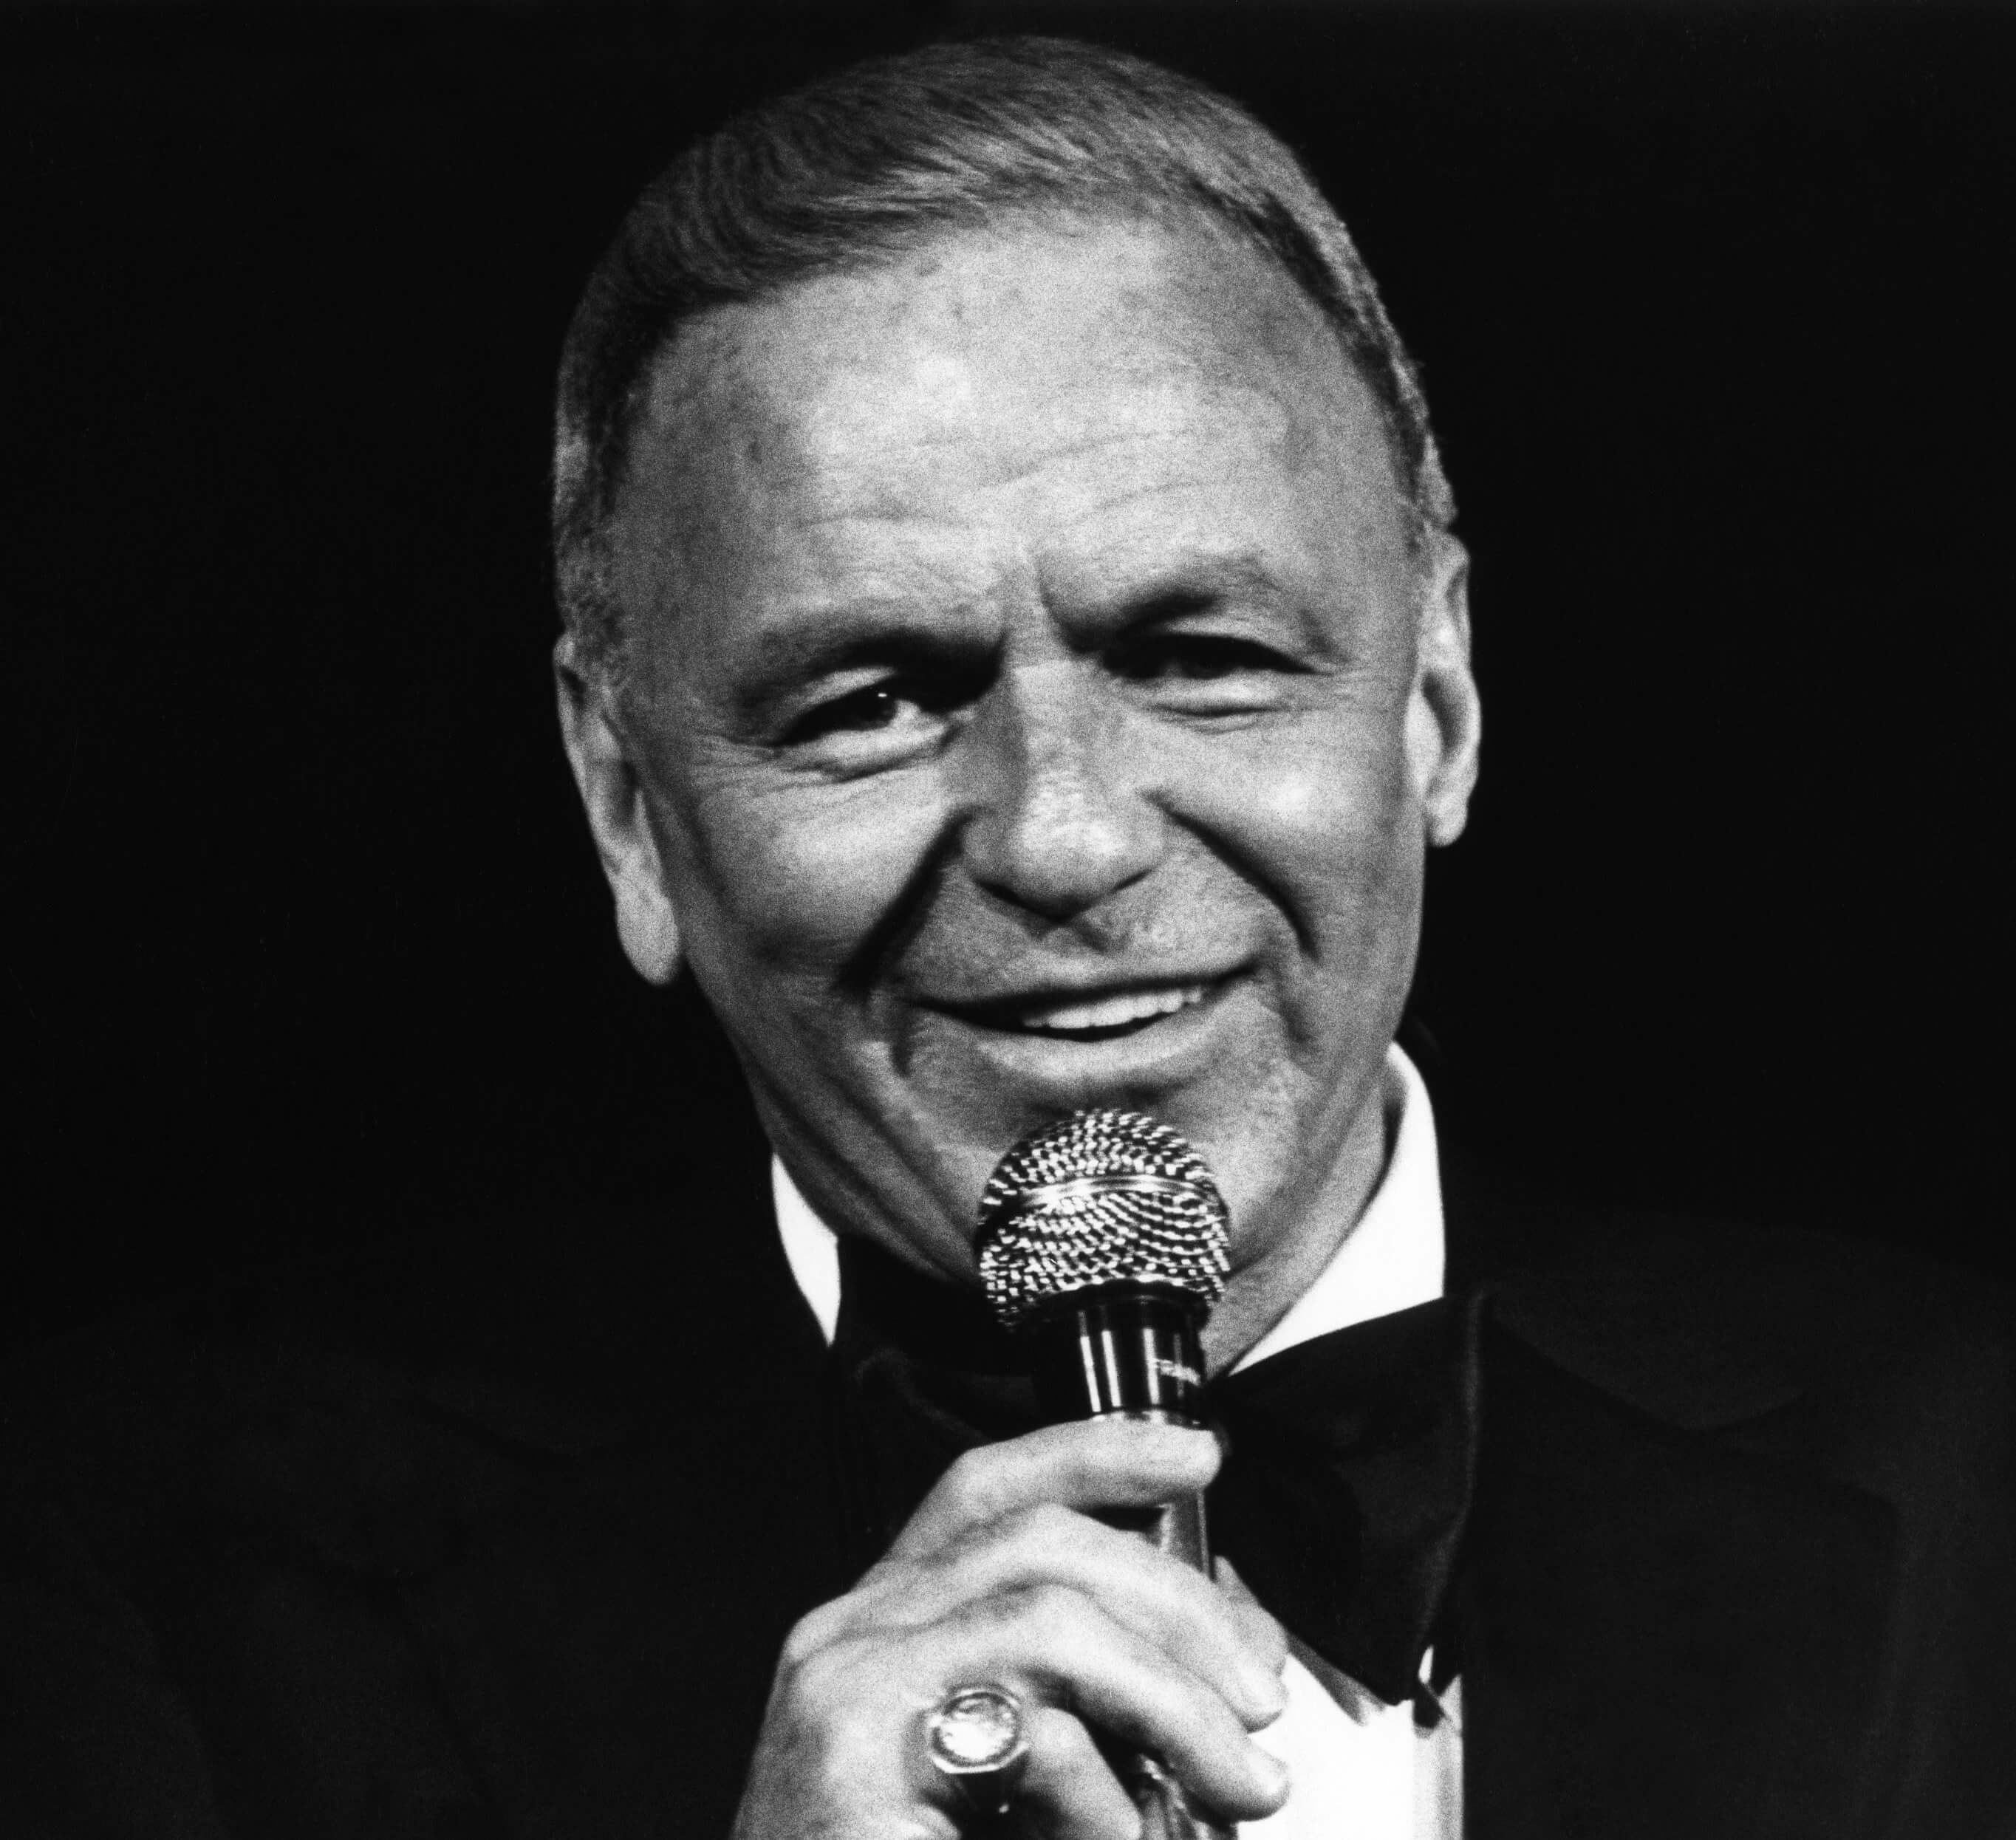 Why Paul Anka Gave ‘My Way’ to Frank Sinatra